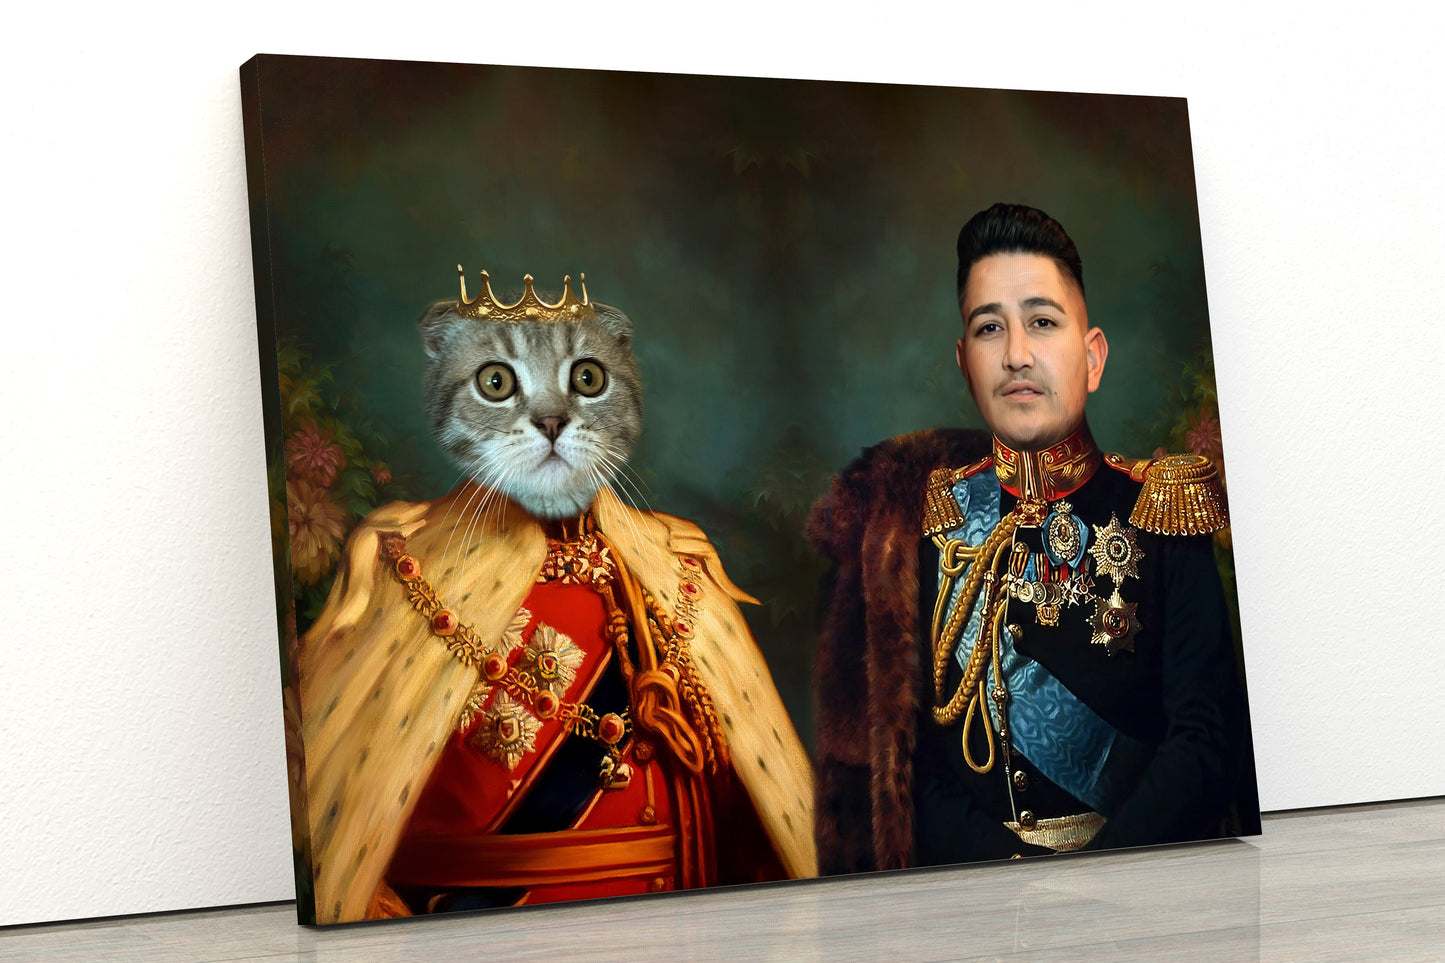 Kral kedi tablosu yaptırmak için tıkla. Evcil hayvanına özel kanvas tablo yaptırmak için sitemizi ziyaret et, fotoğrafını yükle, kişiye özel tablon gelsin.